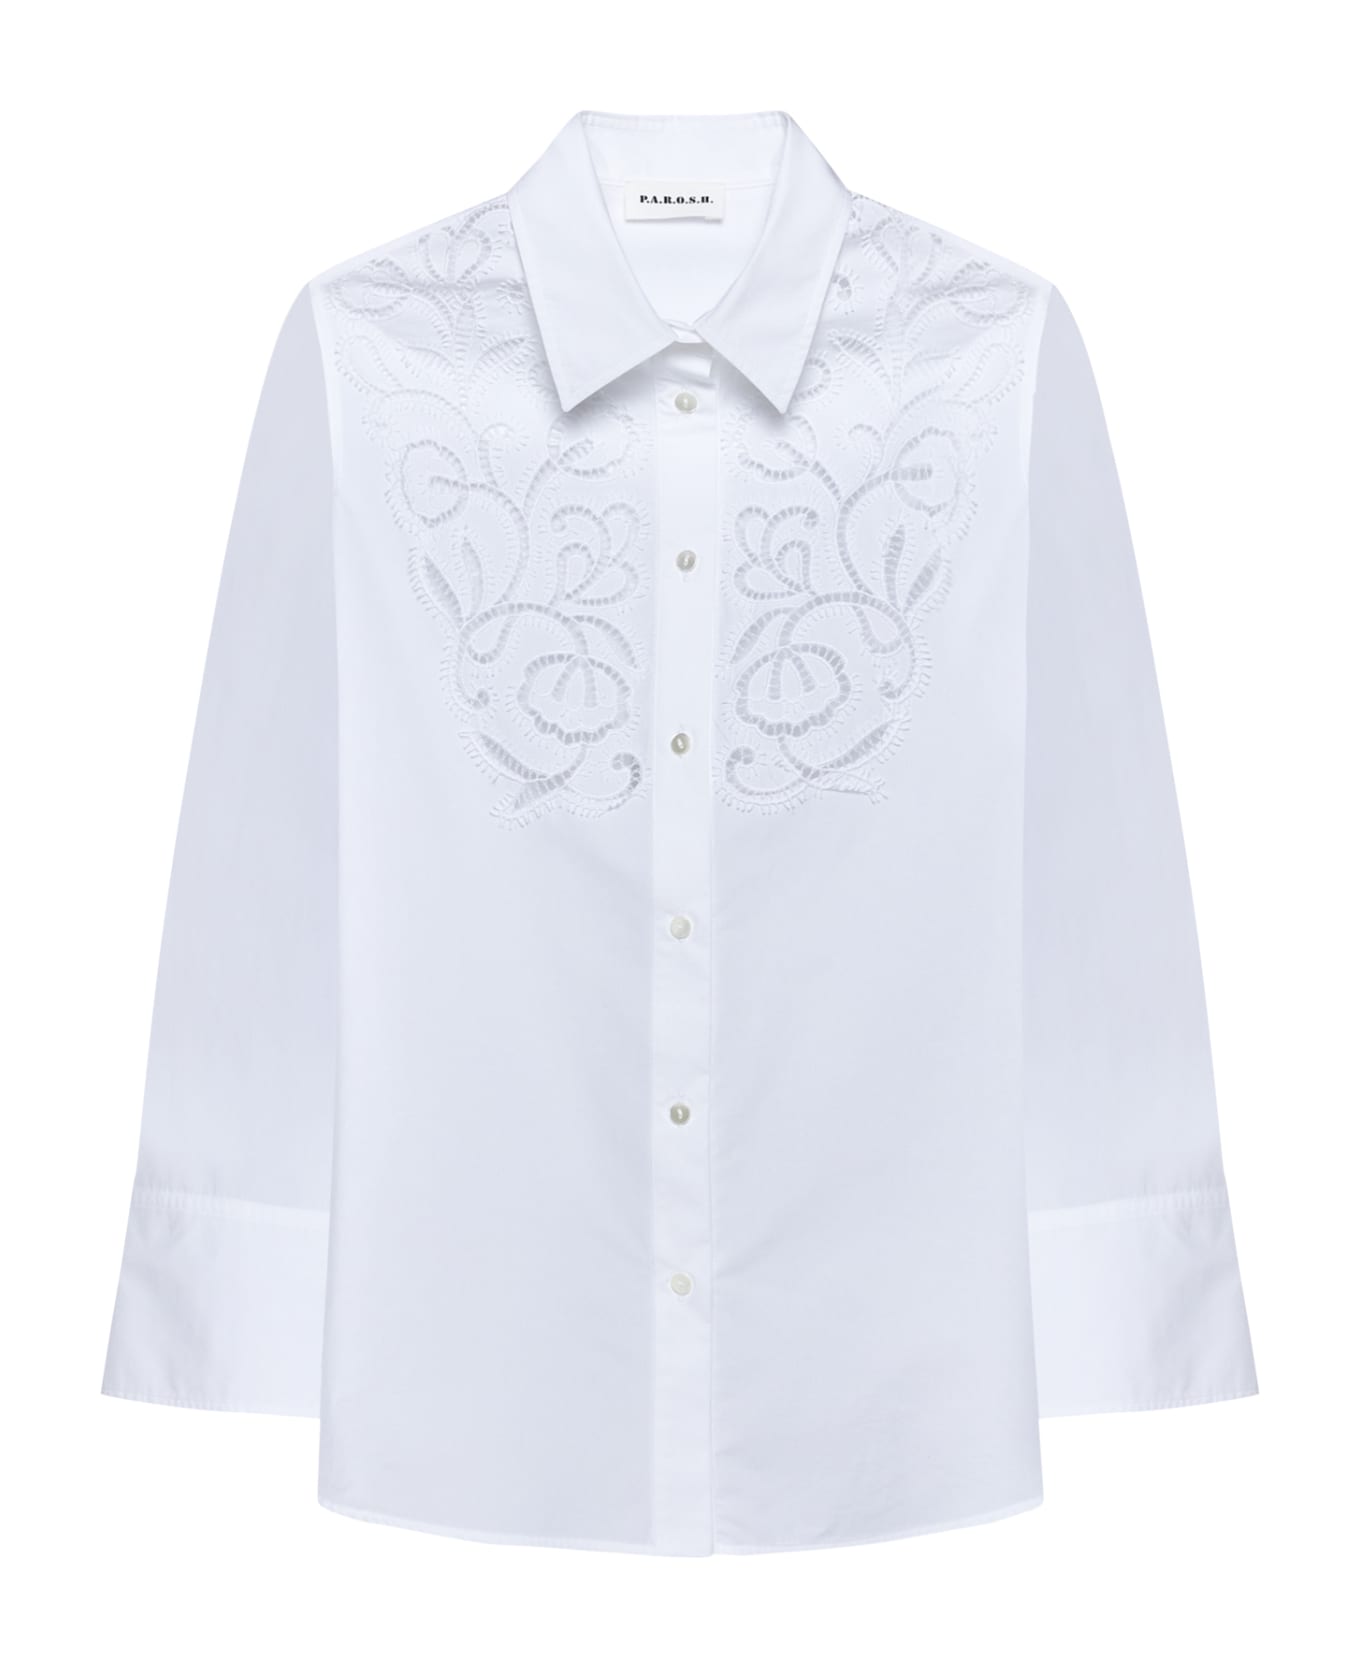 Parosh Shirt - Bianco